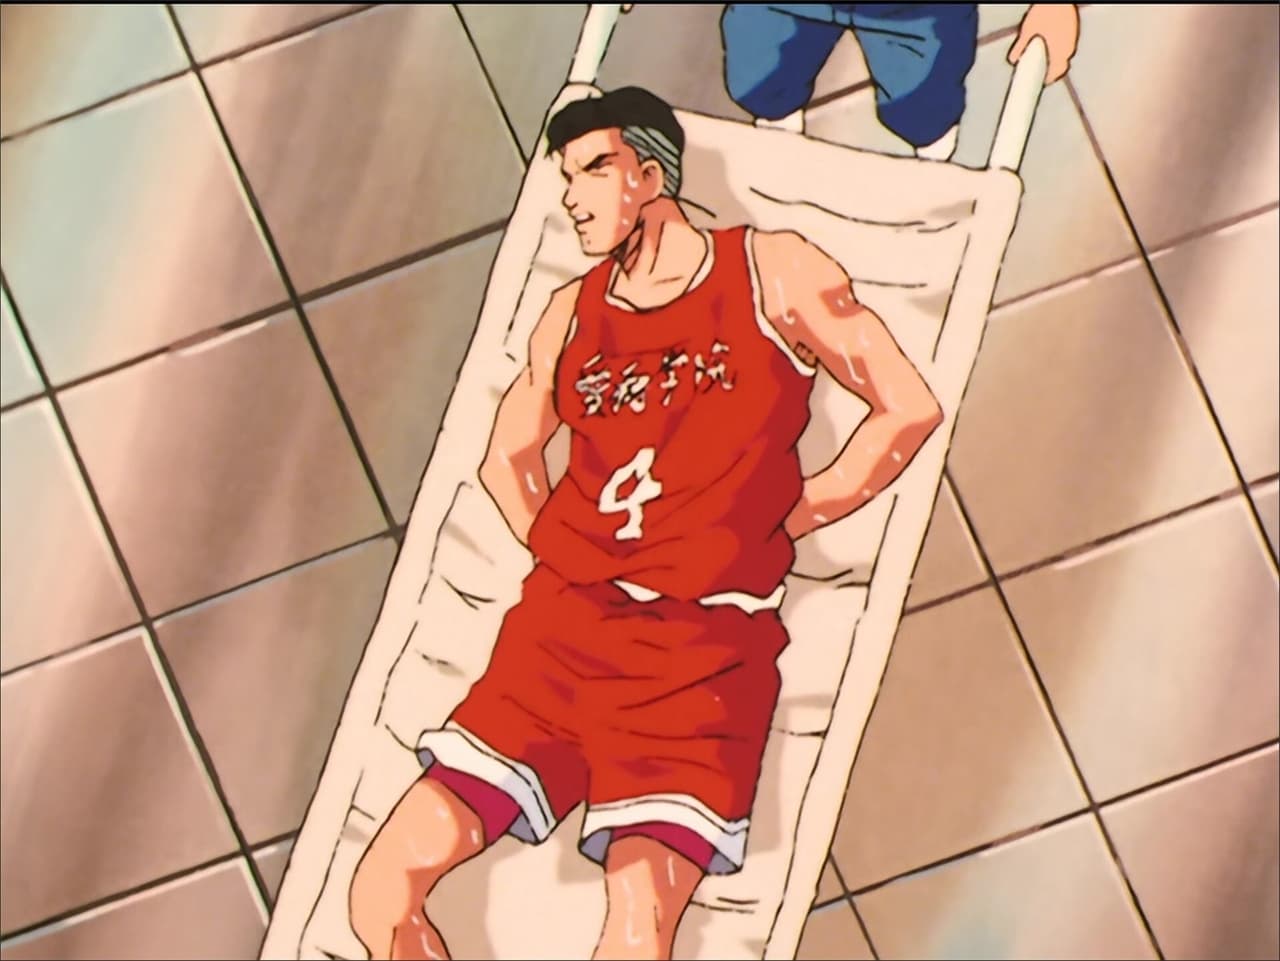 Japans number basketball player